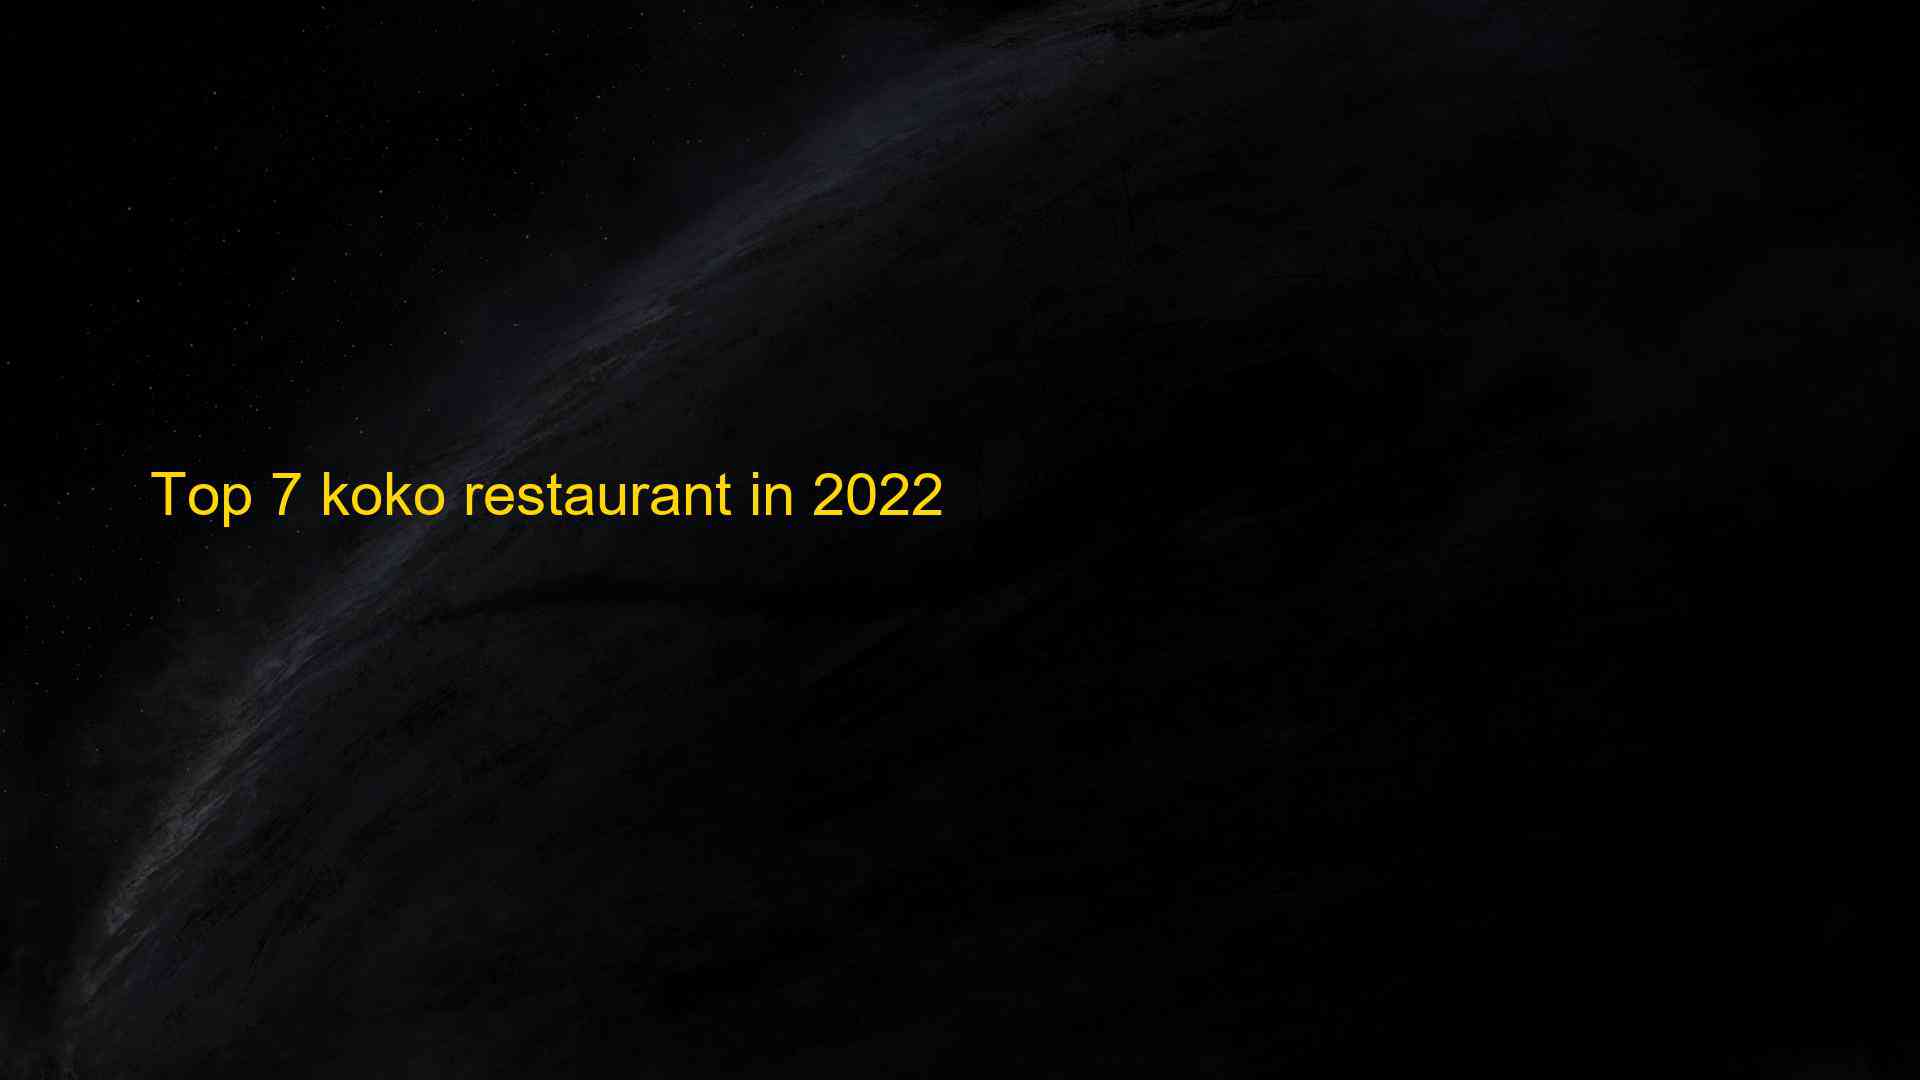 Top 7 koko restaurant in 2022 1663541542